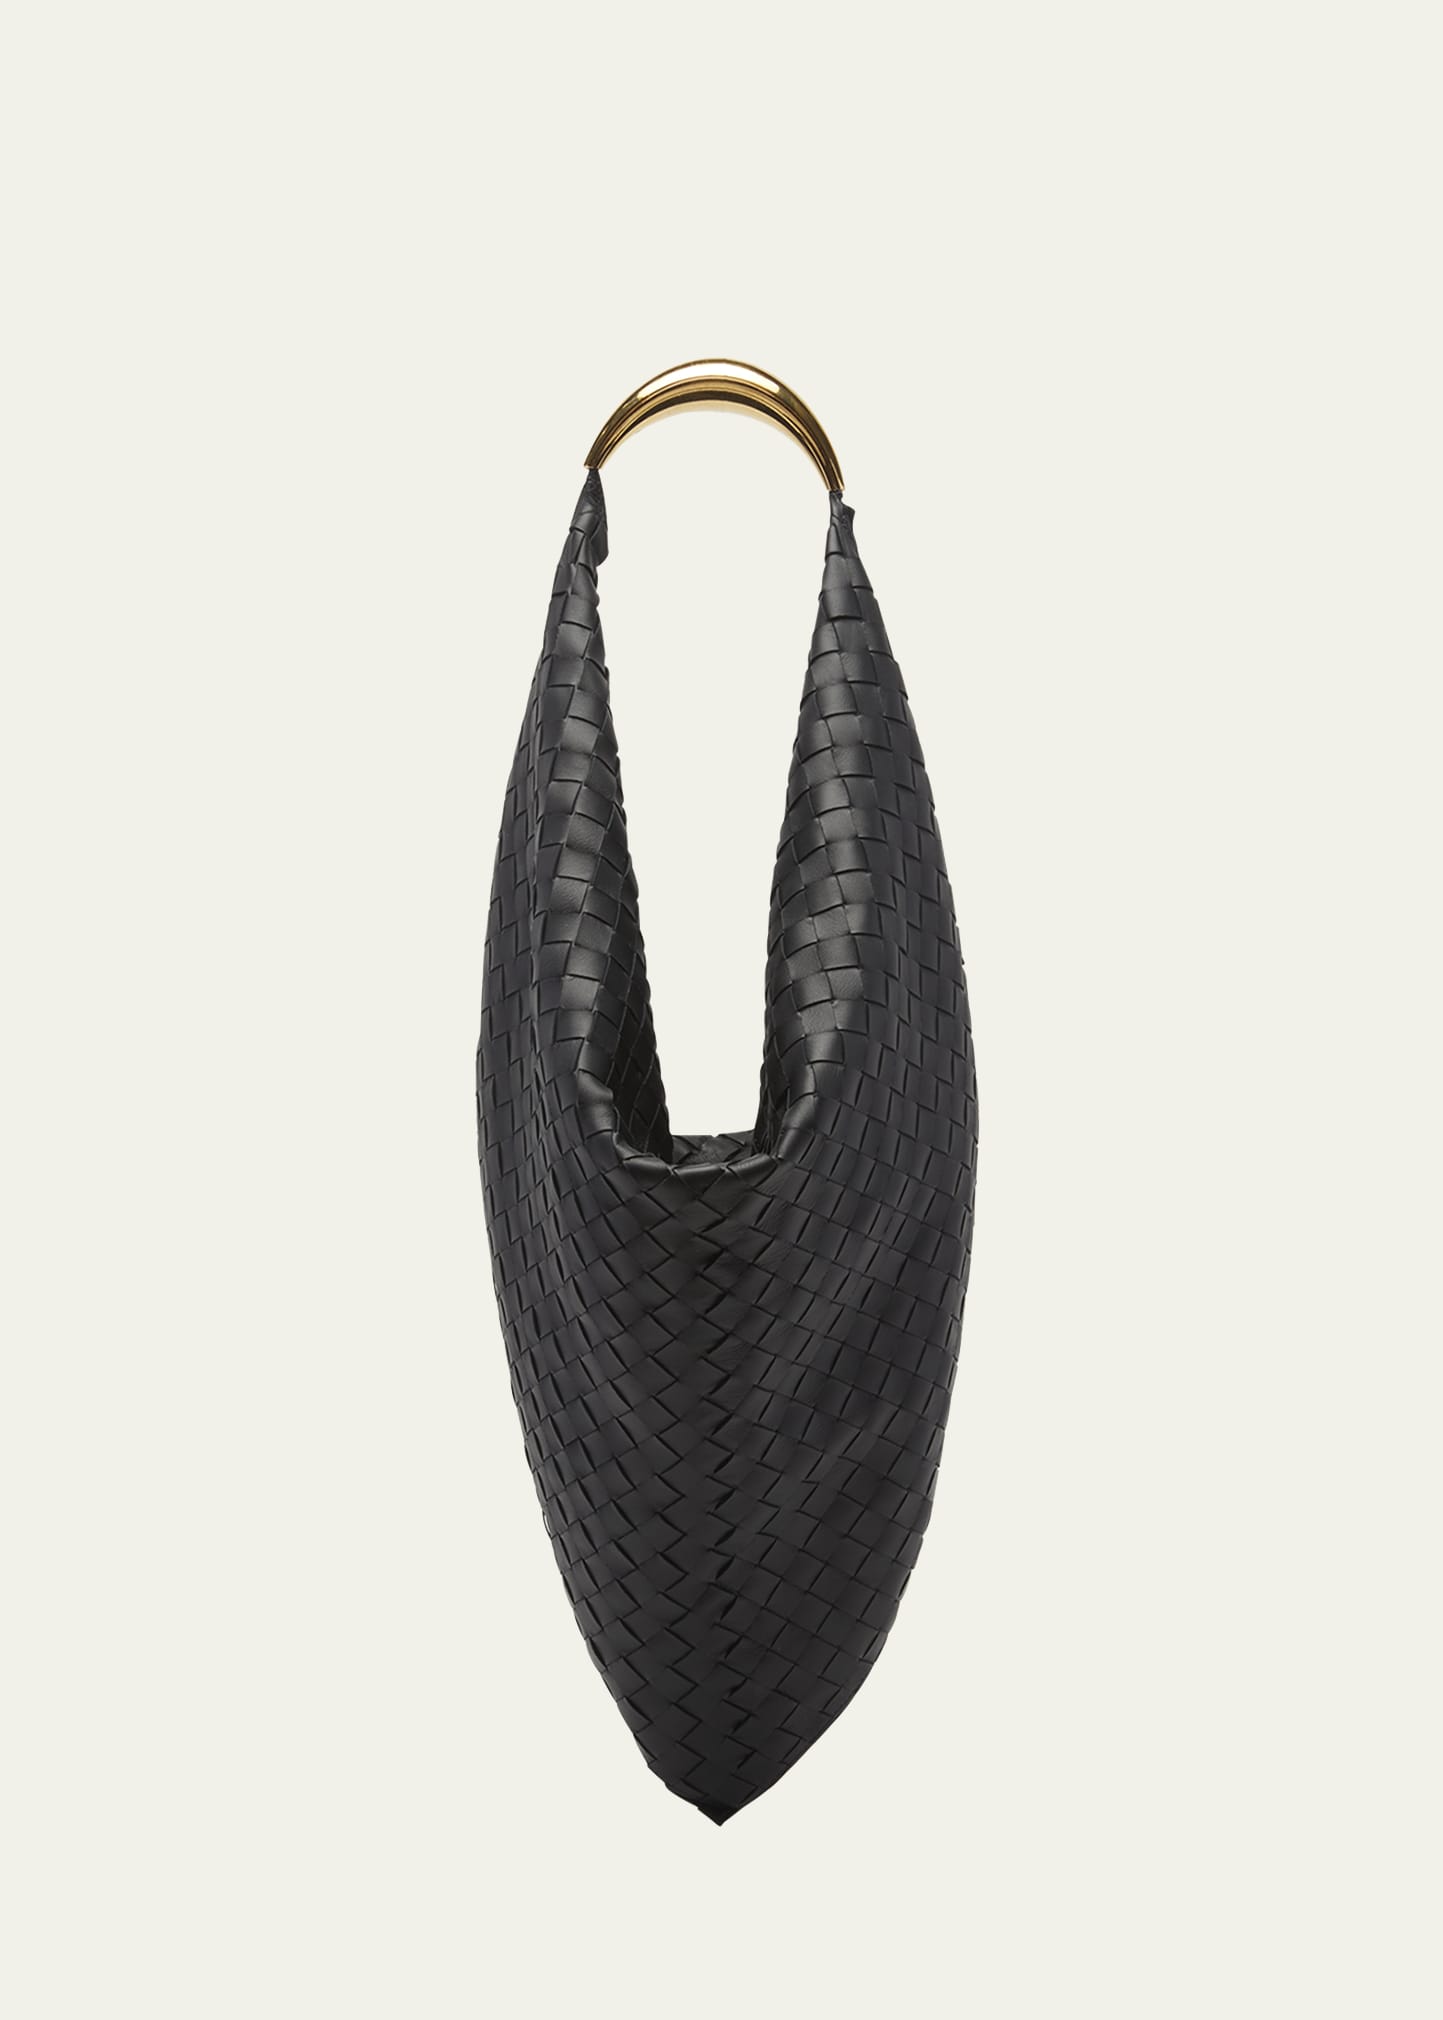 Bottega Veneta The Foulard Intrecciato Leather Shoulder Bag | Bergdorf Goodman